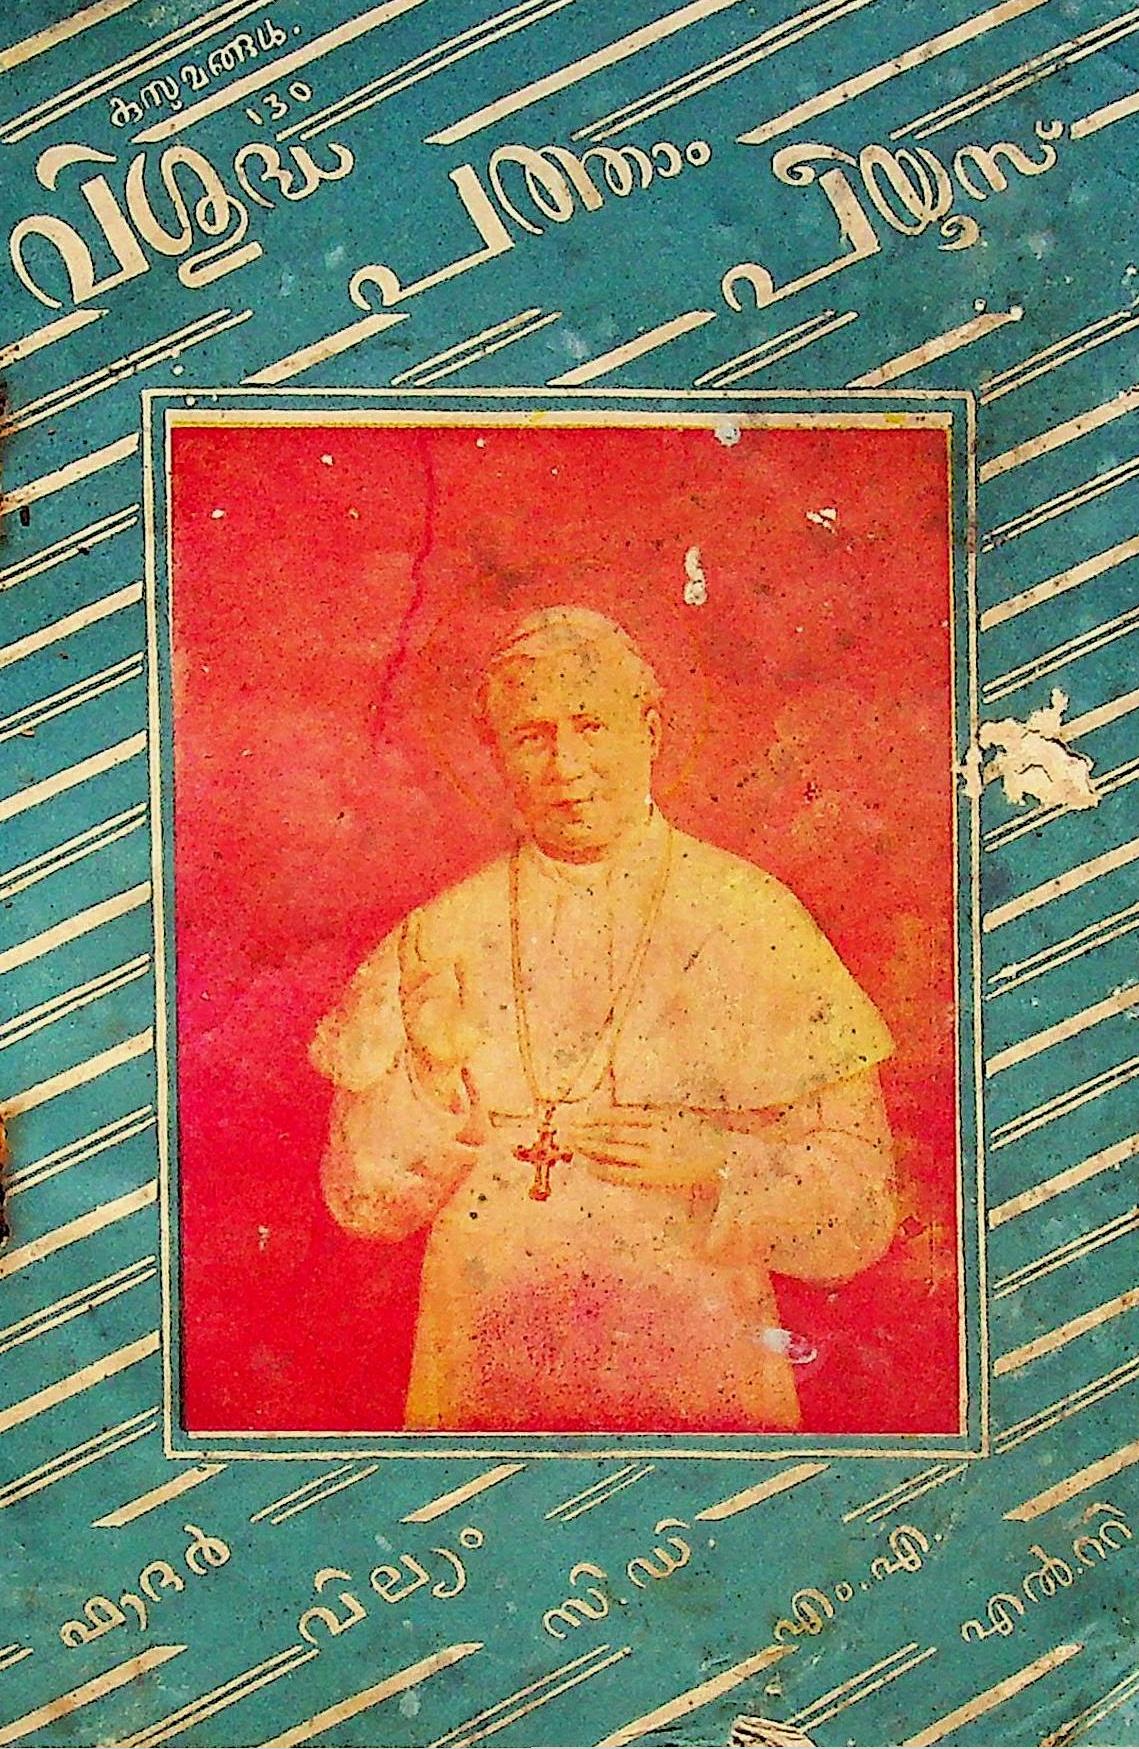 Pope St. Pius X